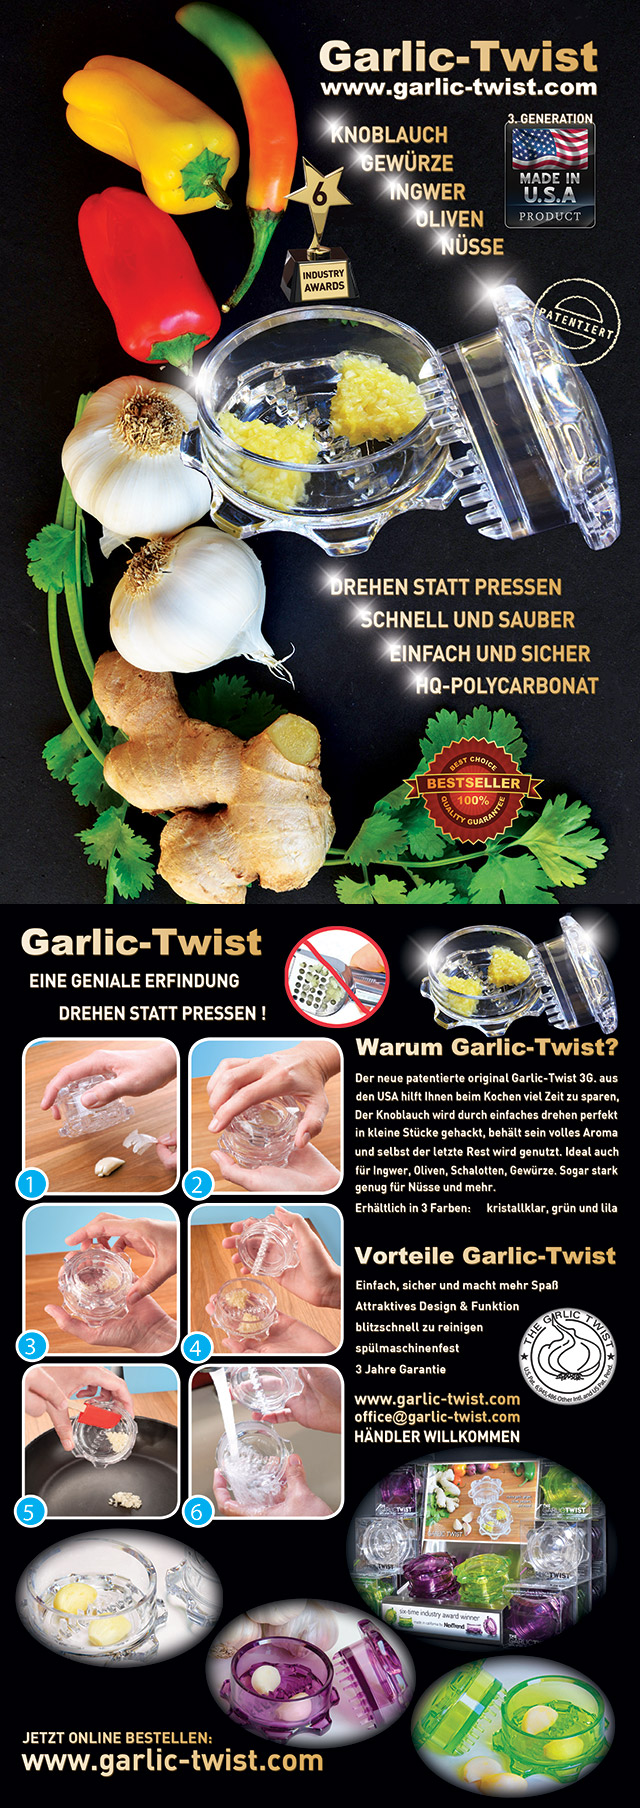 Garlic-Twist 3G. - Grn